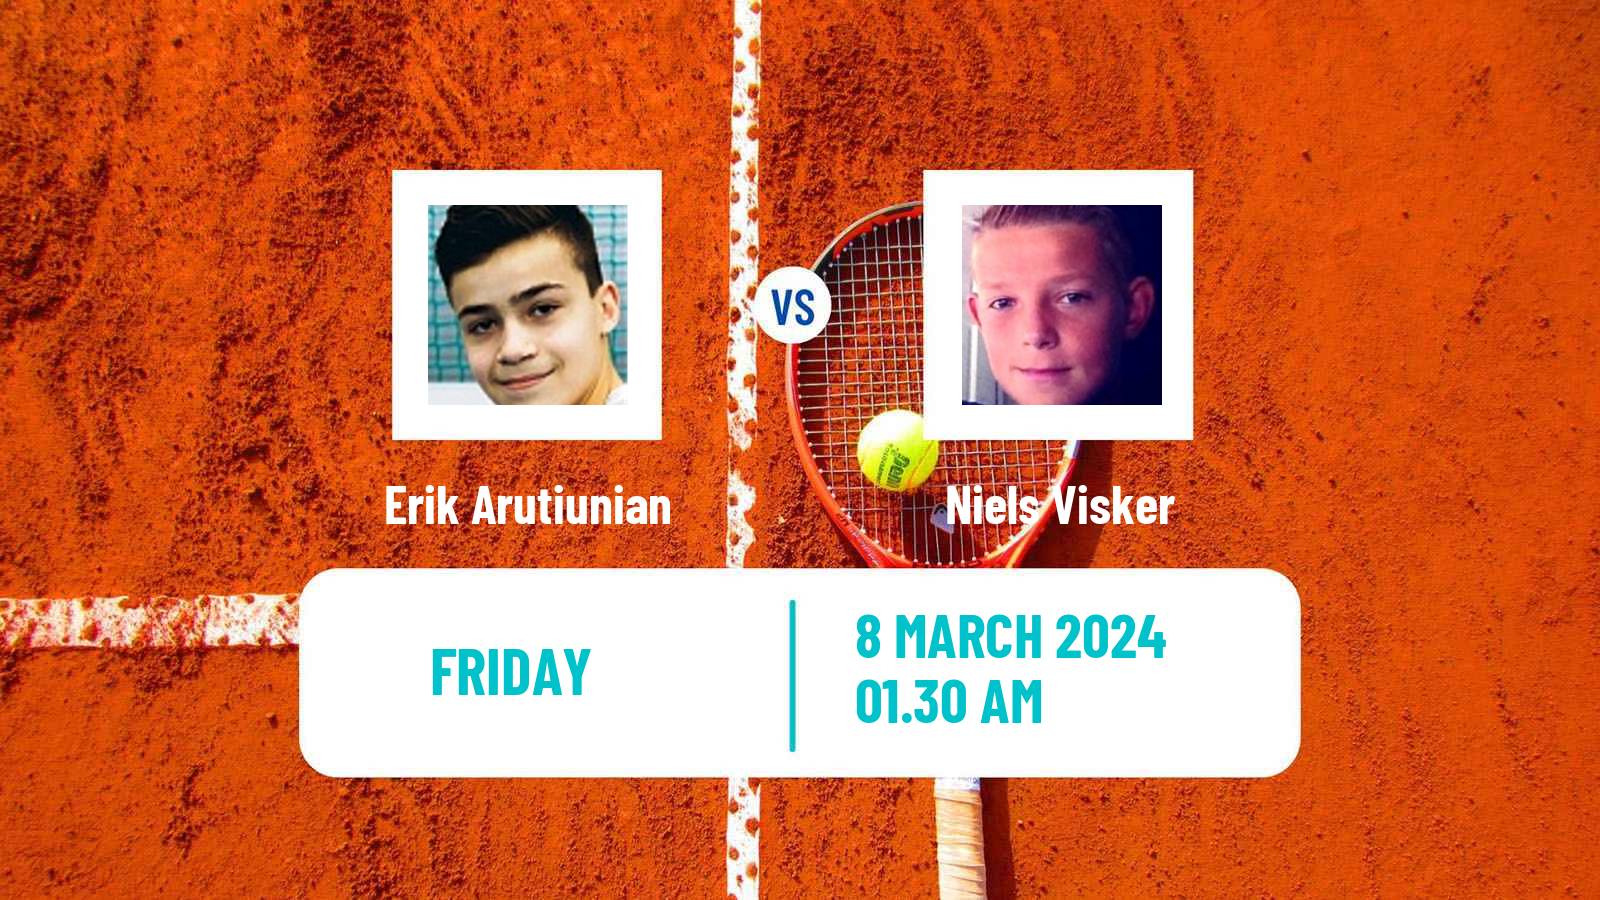 Tennis ITF M15 Aktobe Men Erik Arutiunian - Niels Visker